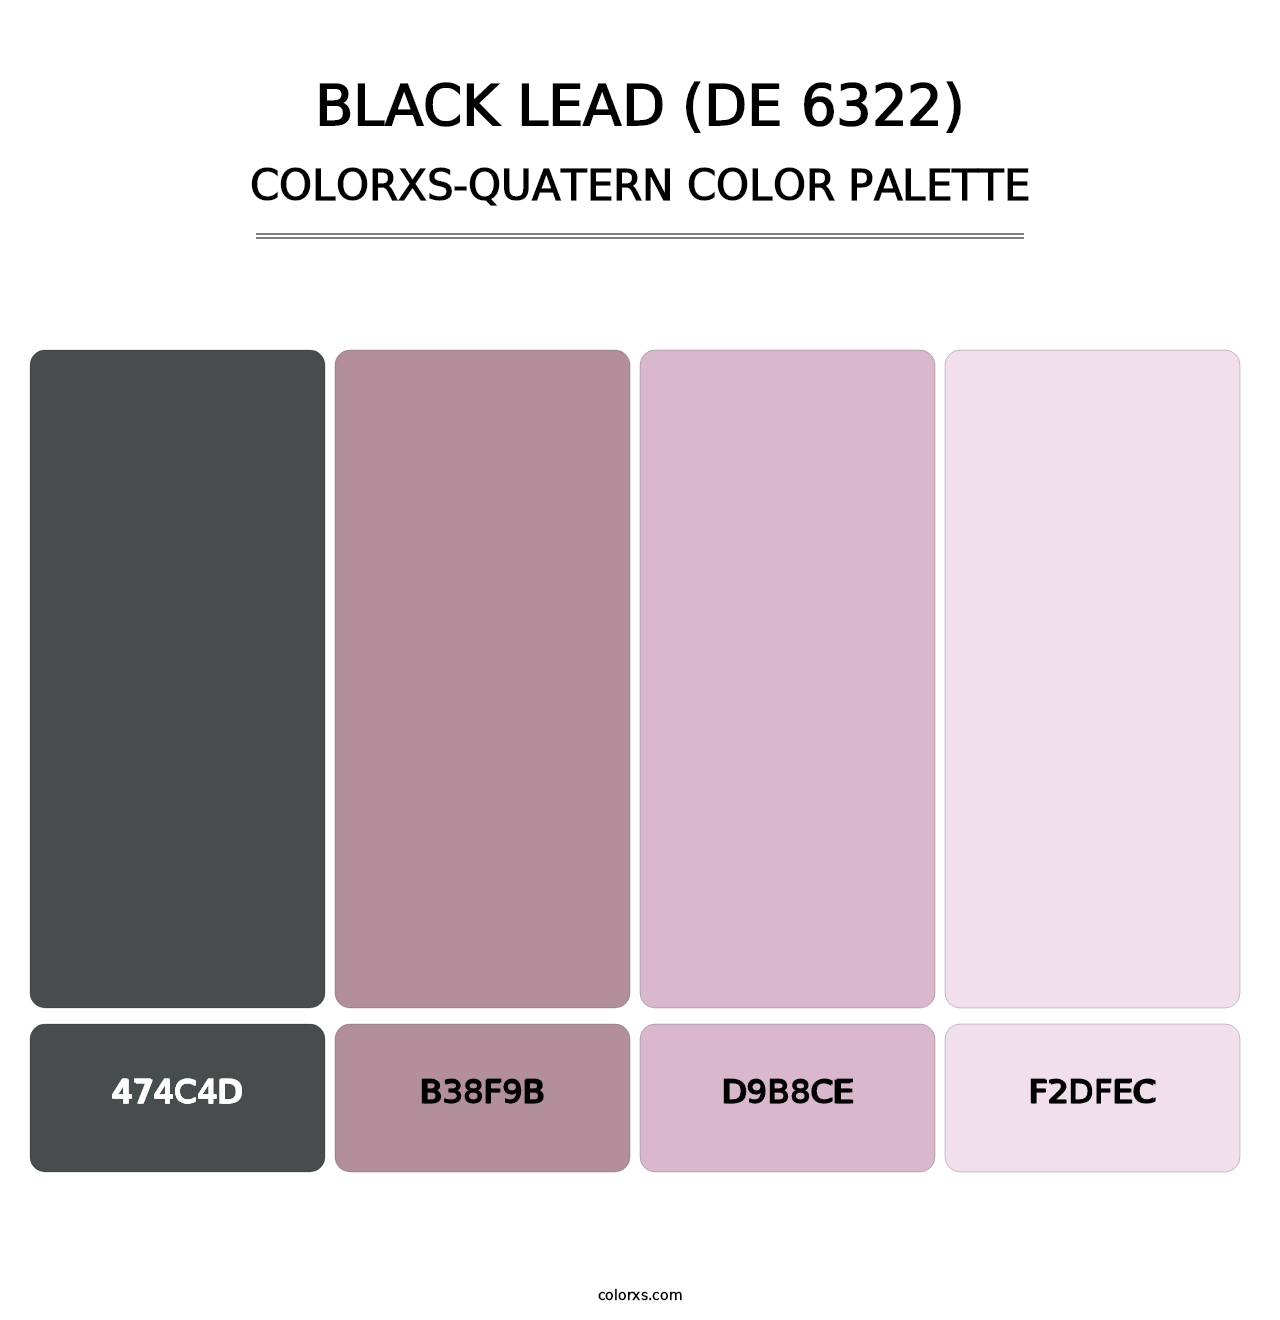 Black Lead (DE 6322) - Colorxs Quatern Palette